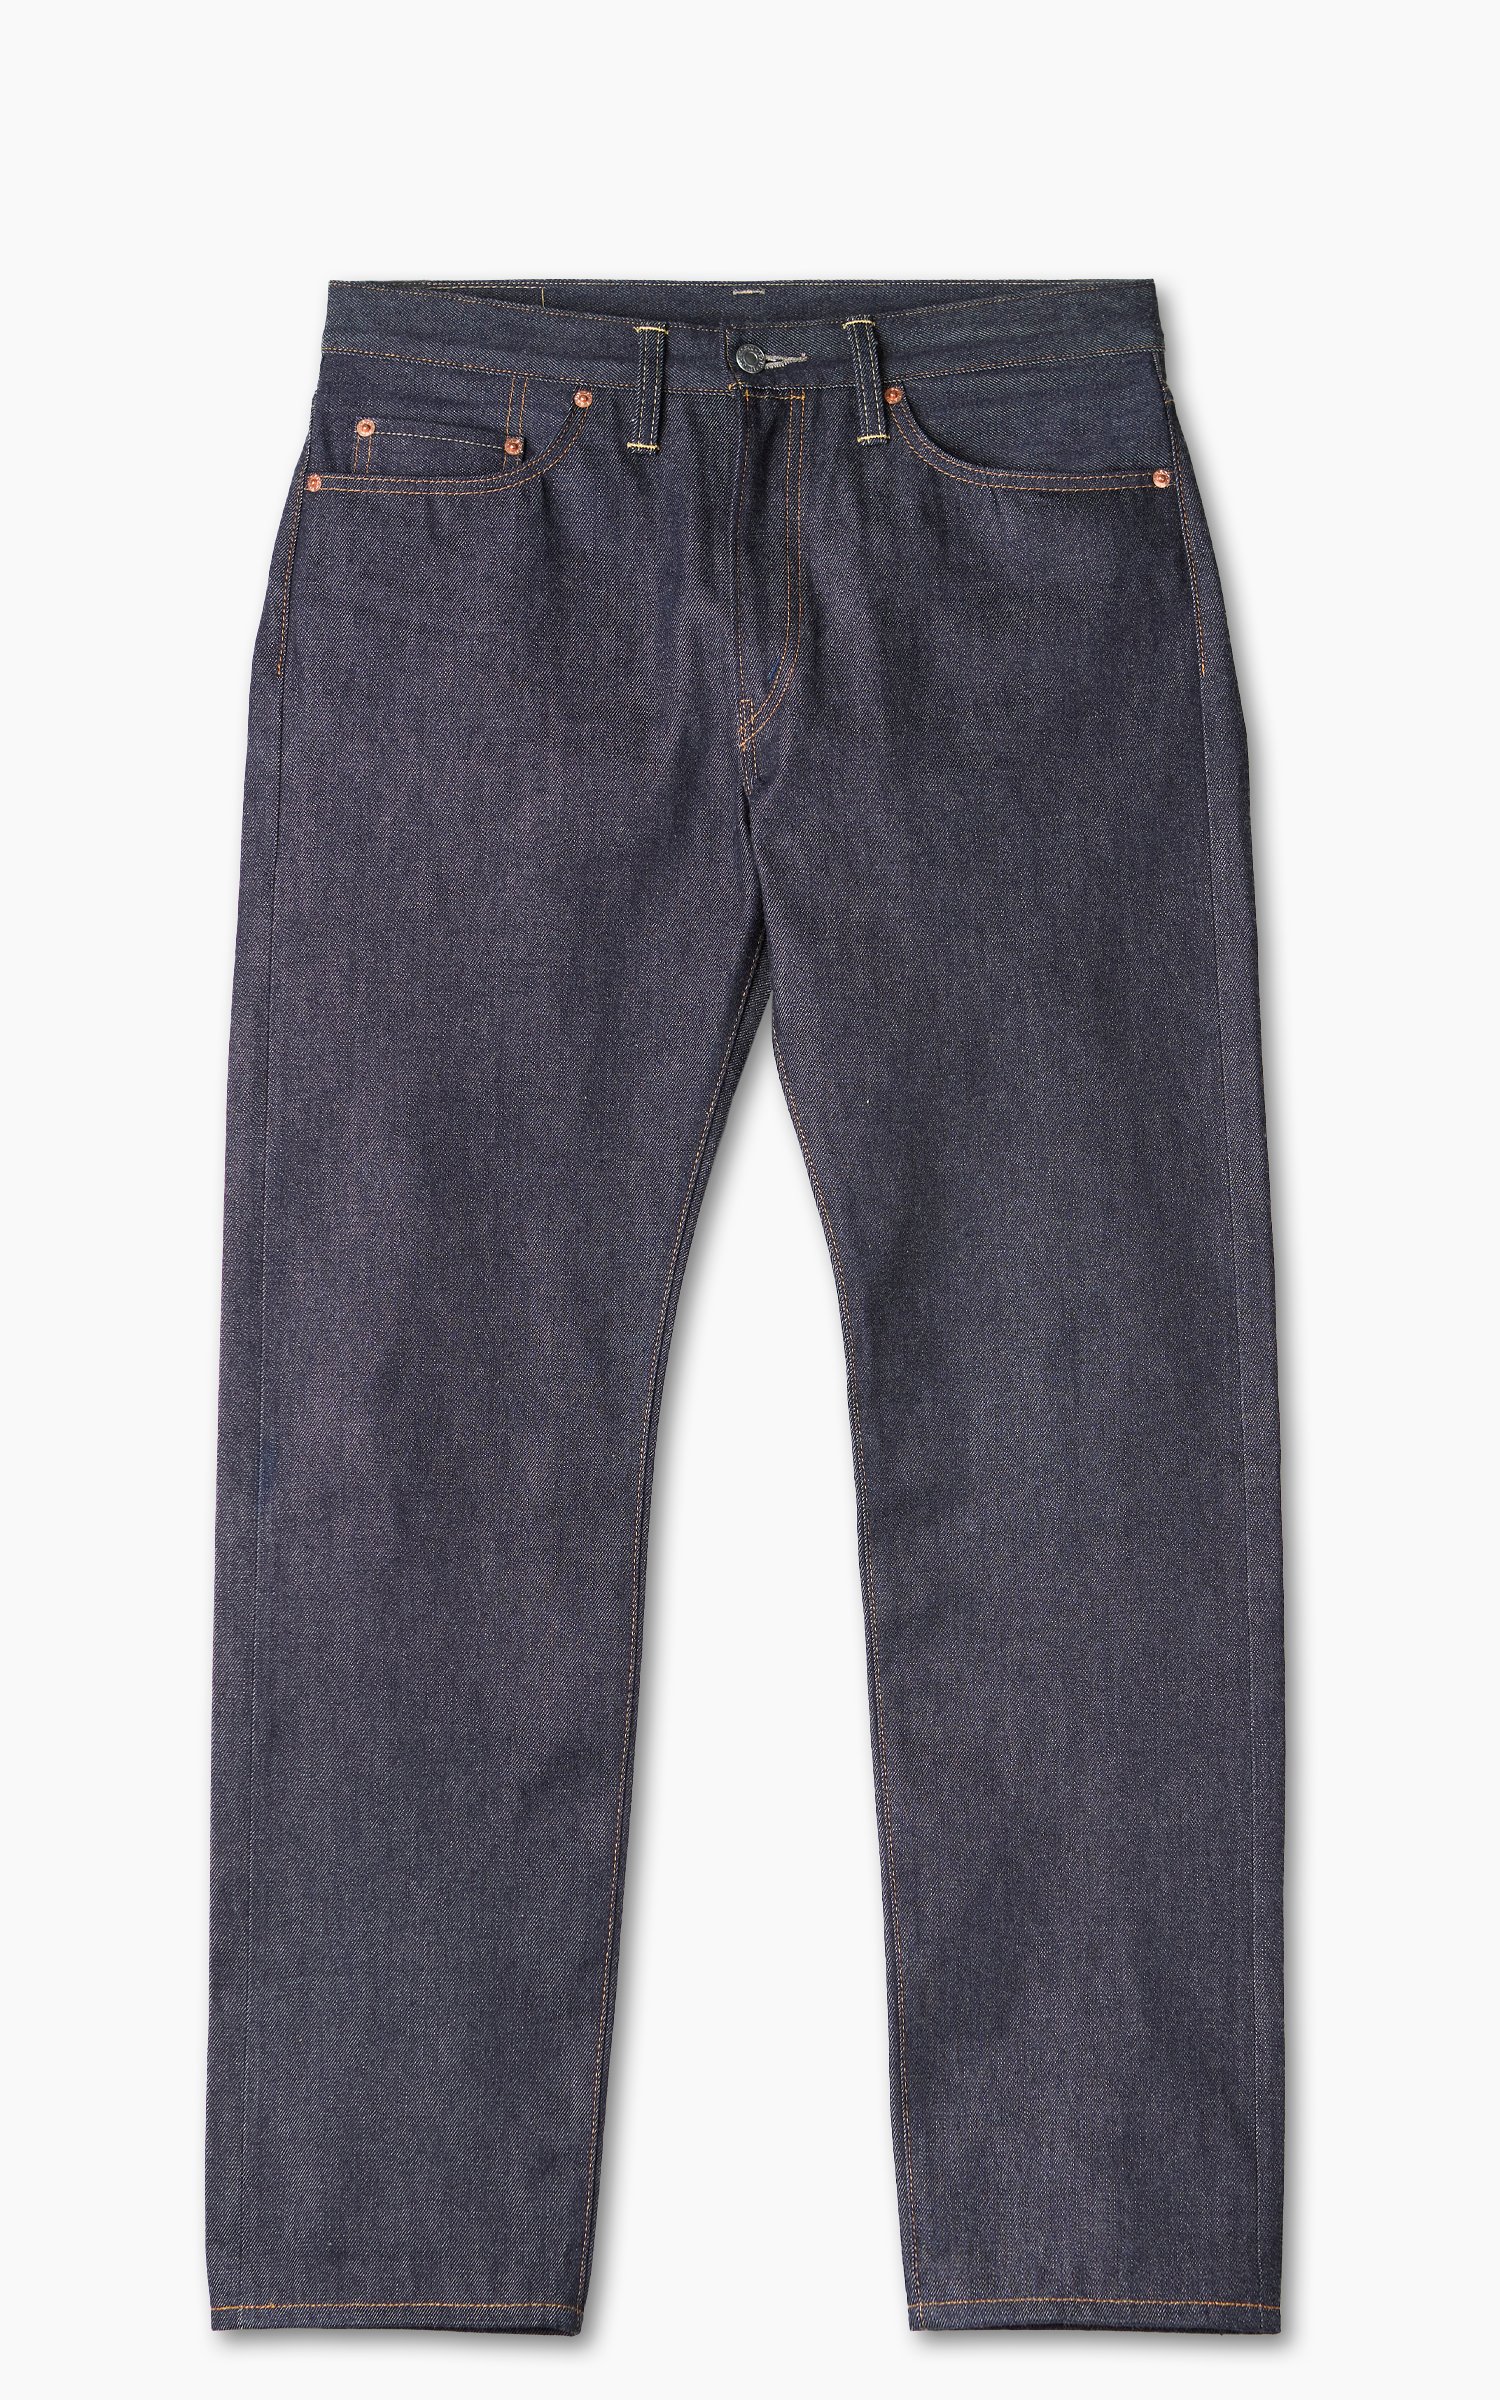 Levi's Vintage 1954 501 Jeans - Rigid on Garmentory